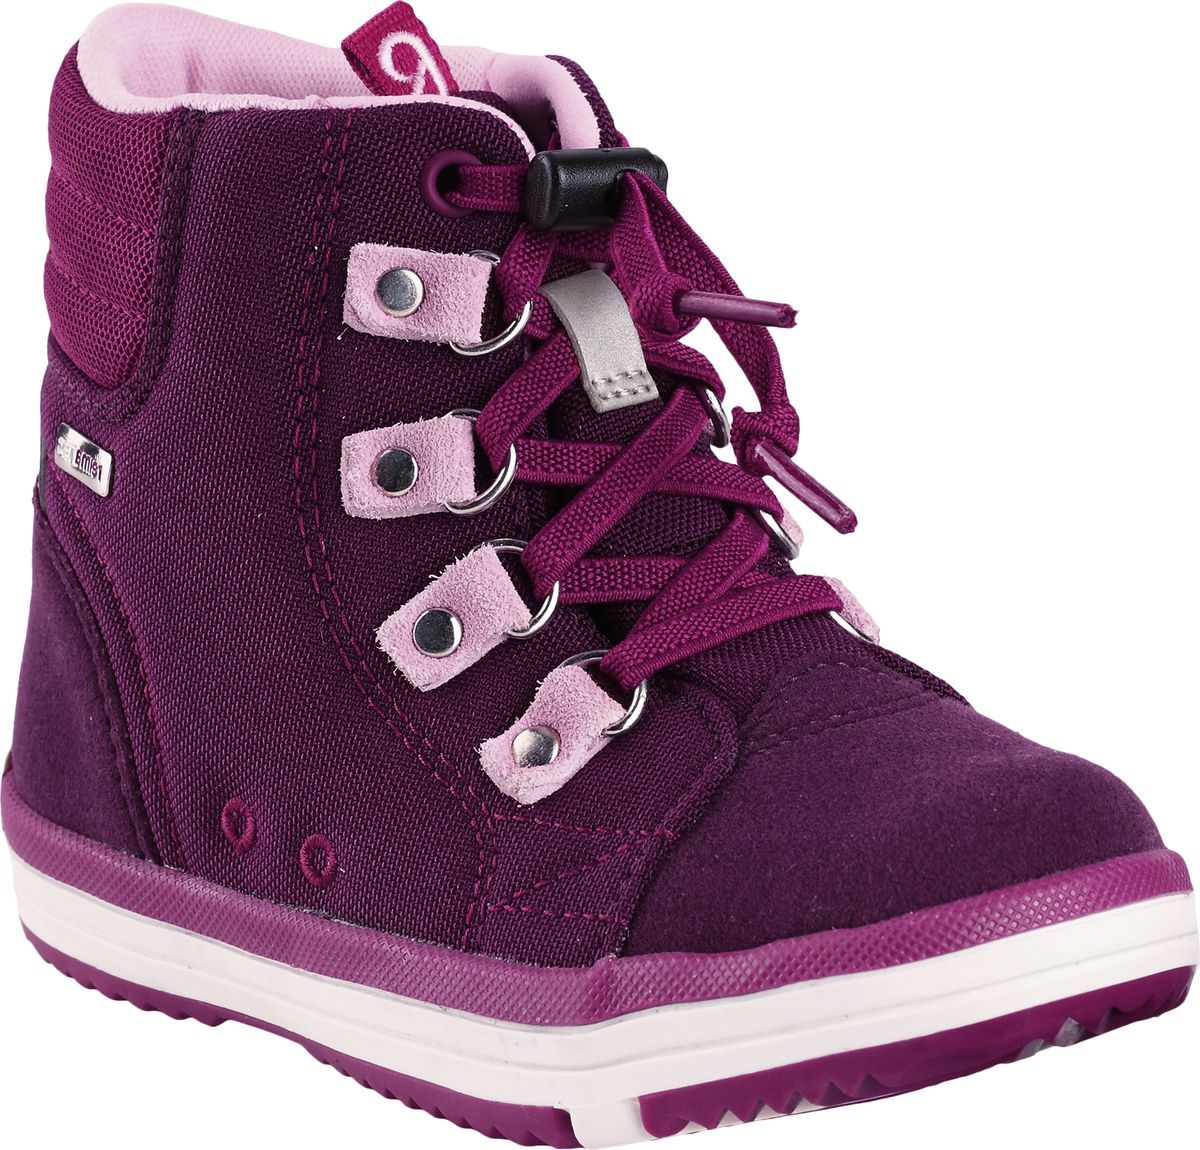 Ботинки детские Reima Wetter, цвет: фиолетовый. 5693434960. Размер 37